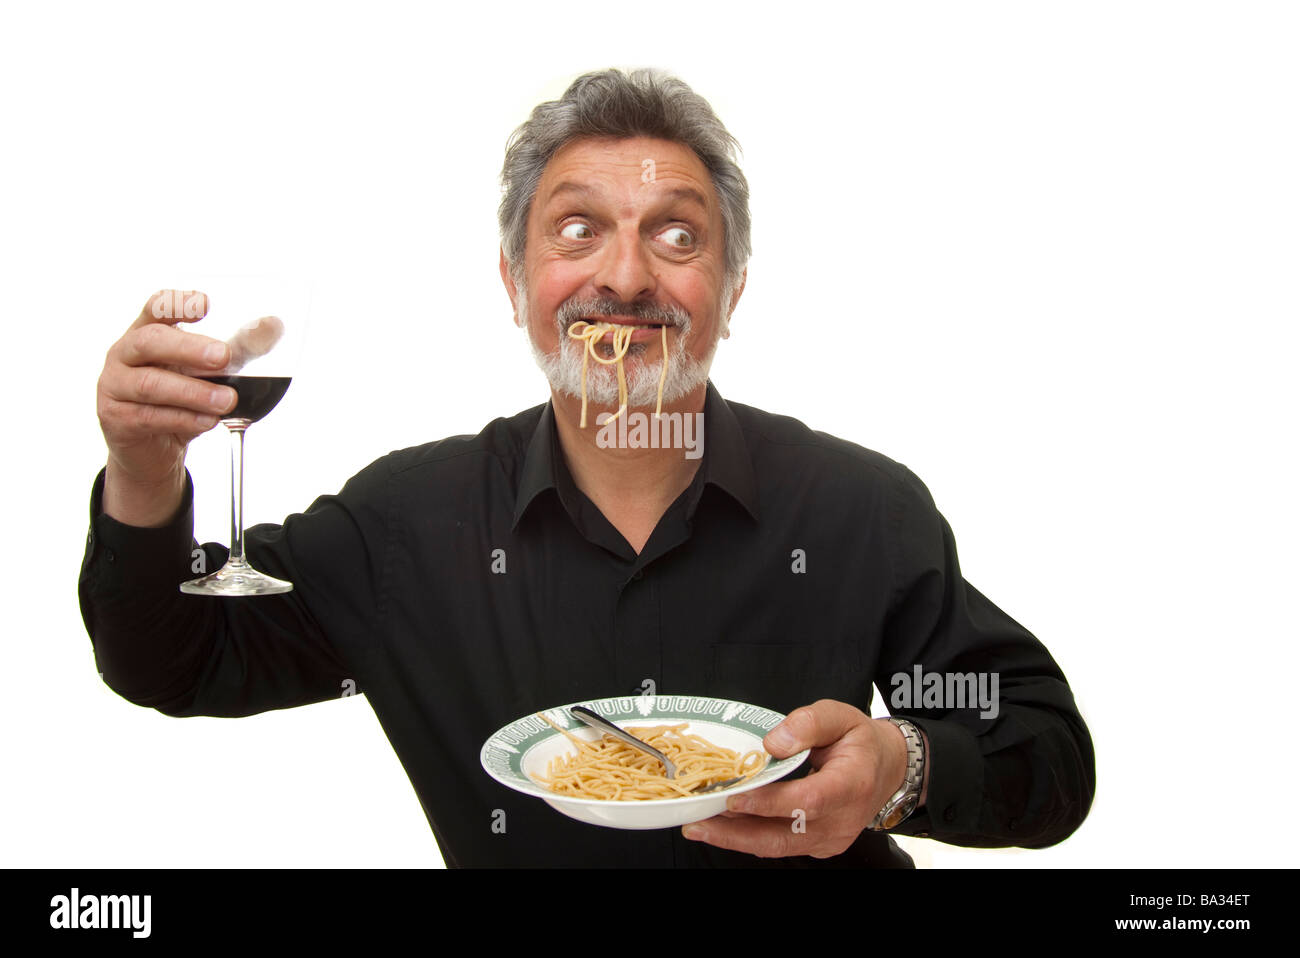 man eating pasta Stock Photo